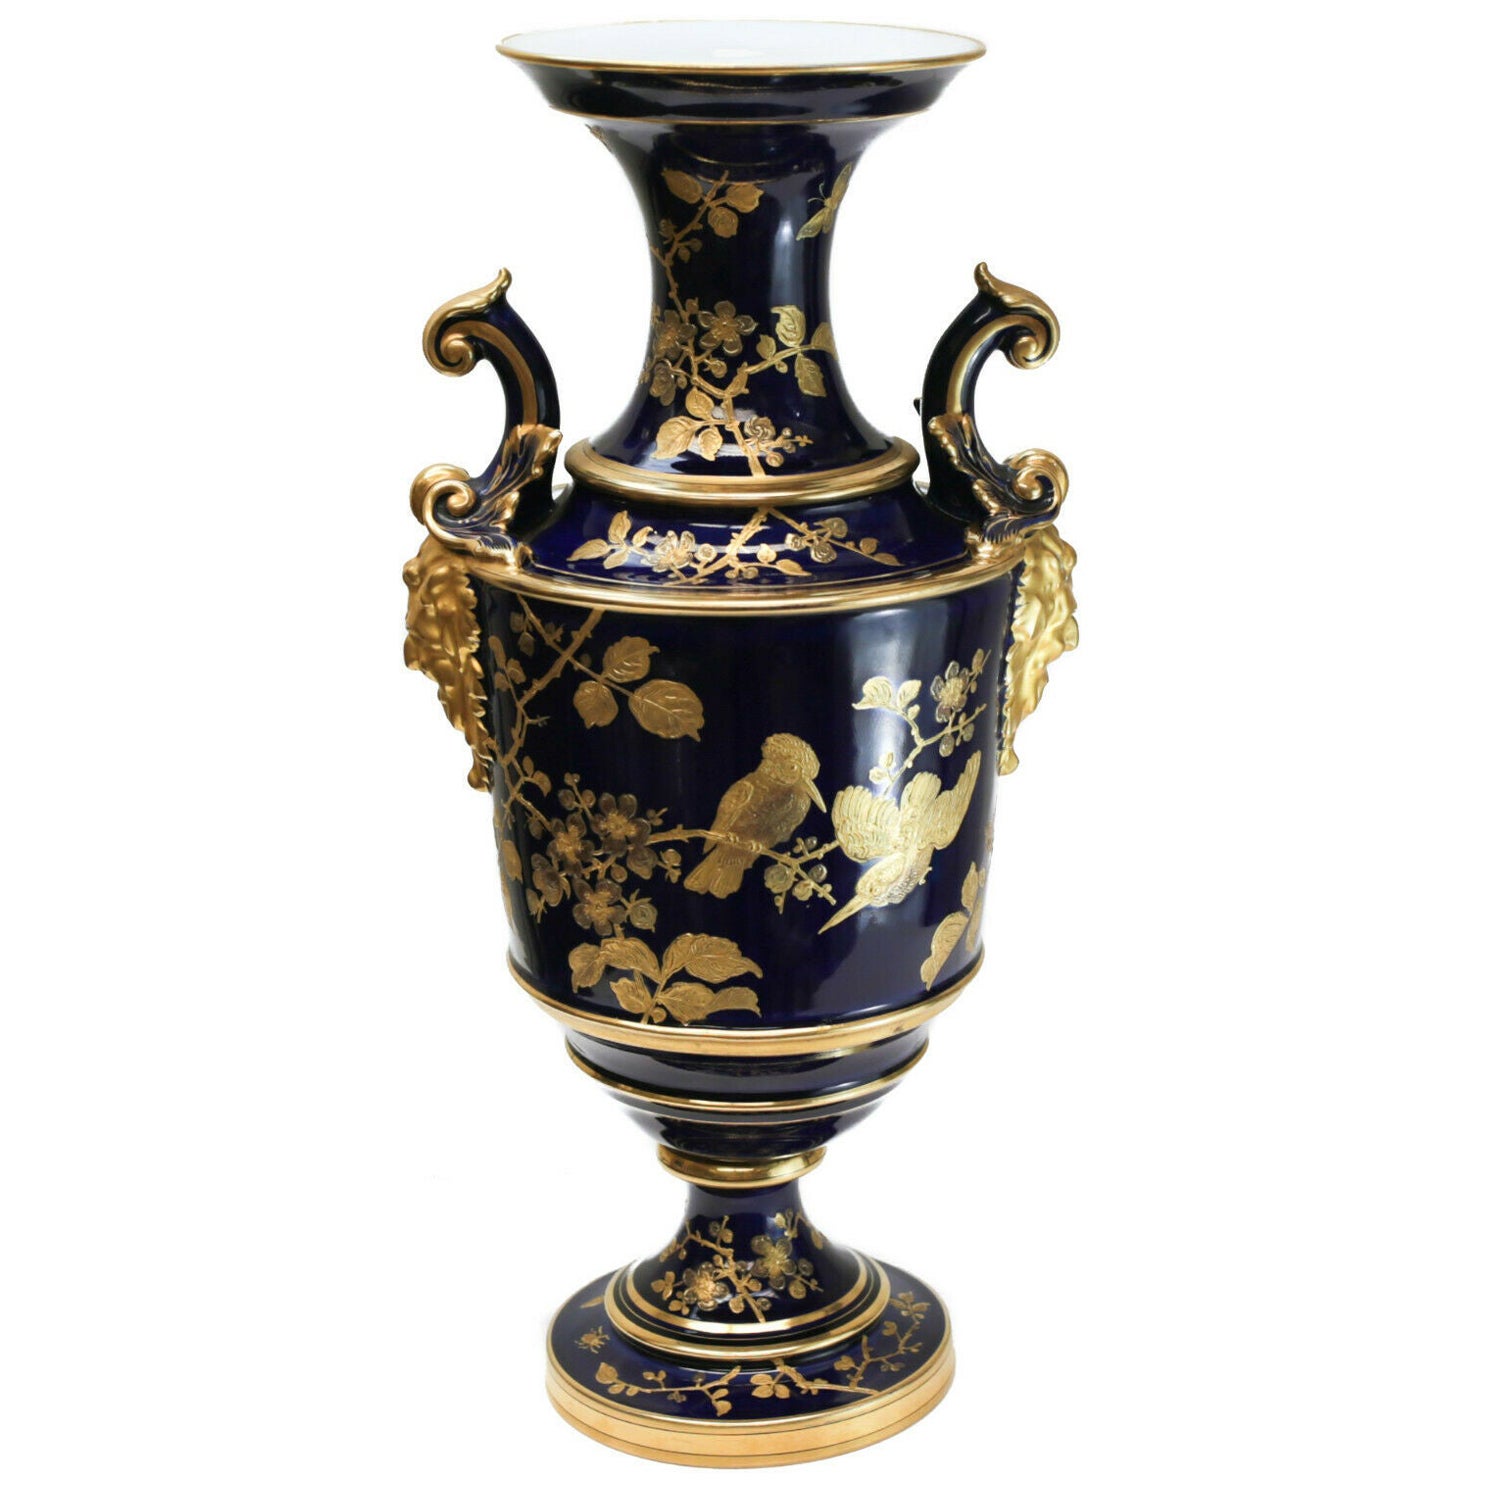 Pirkenhammer Cobalt Blue Porcelain and Gilt Double Handled Footed Vase